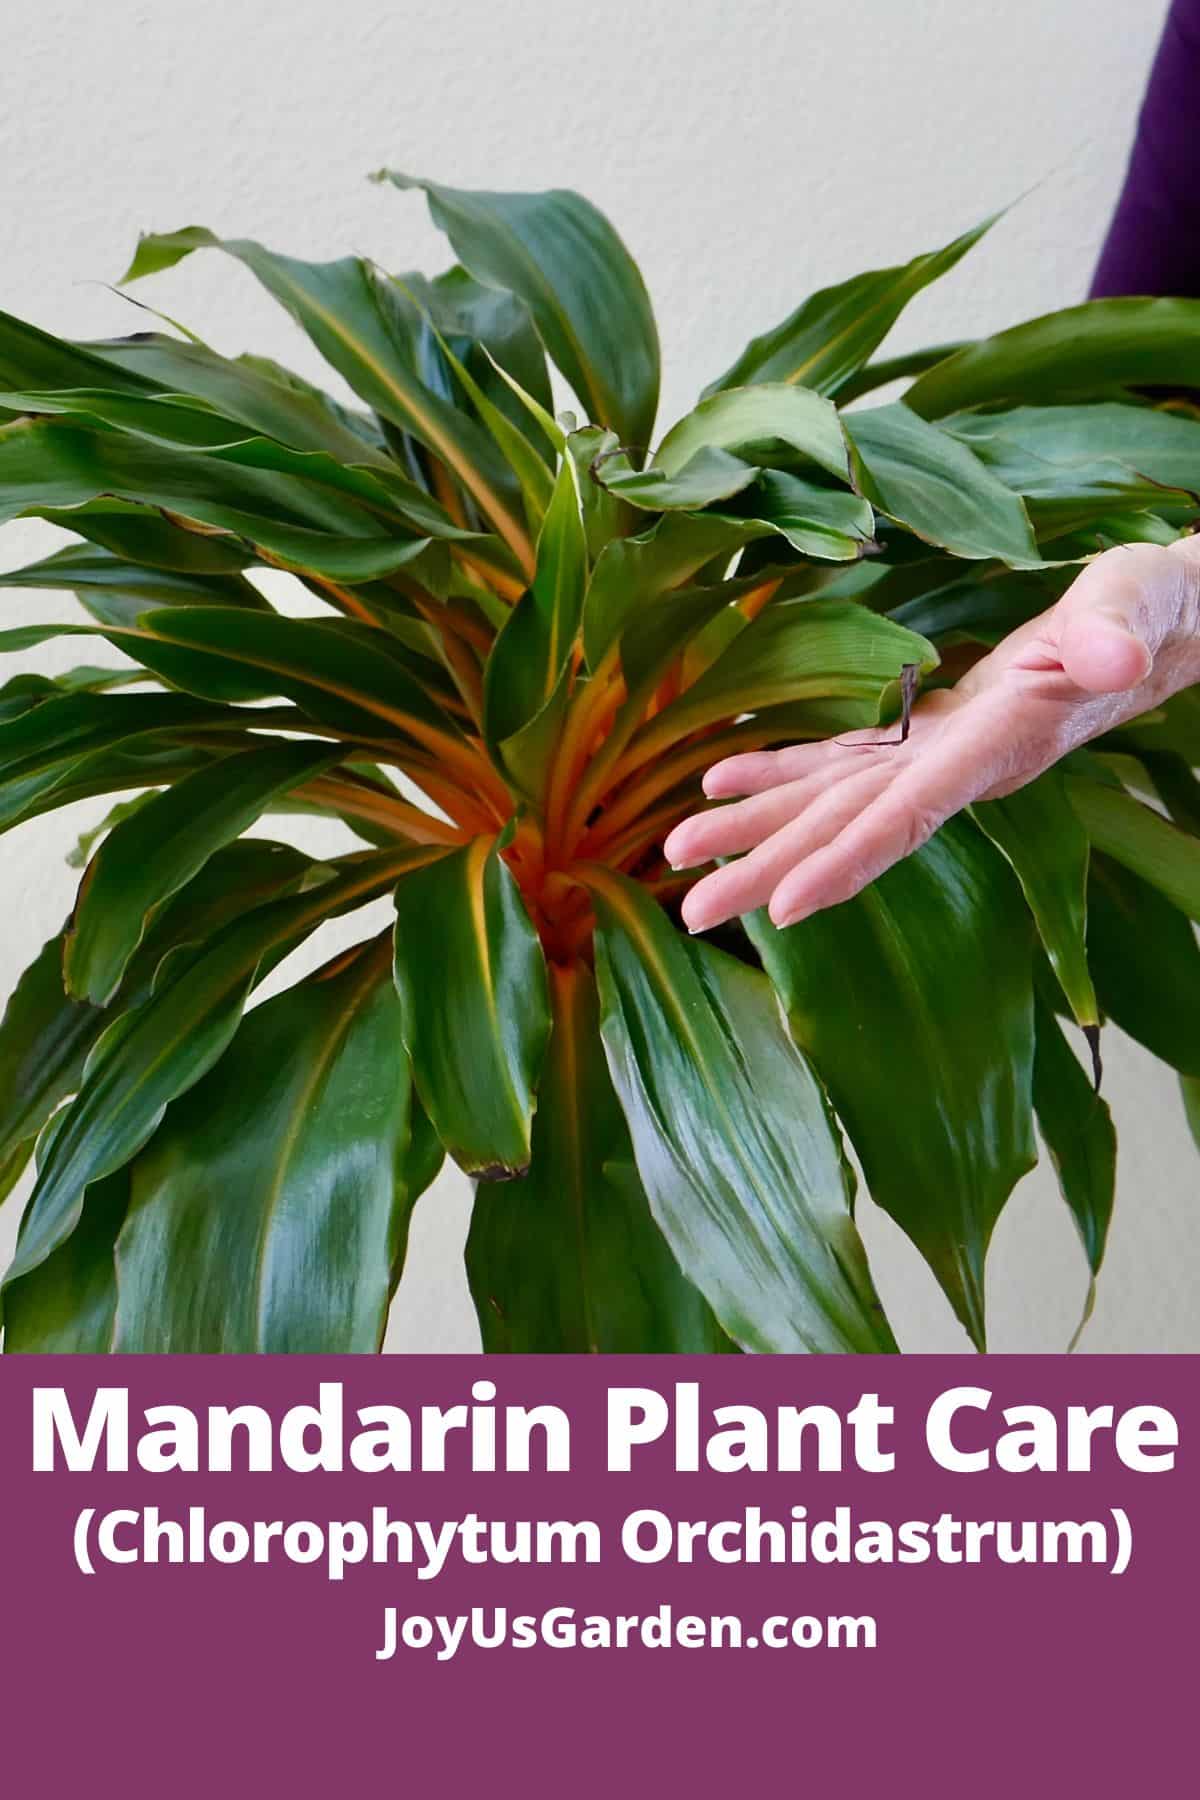  मंदारिन पौधे की देखभाल: क्लोरोफाइटम ऑर्किडास्ट्रम कैसे उगाएं